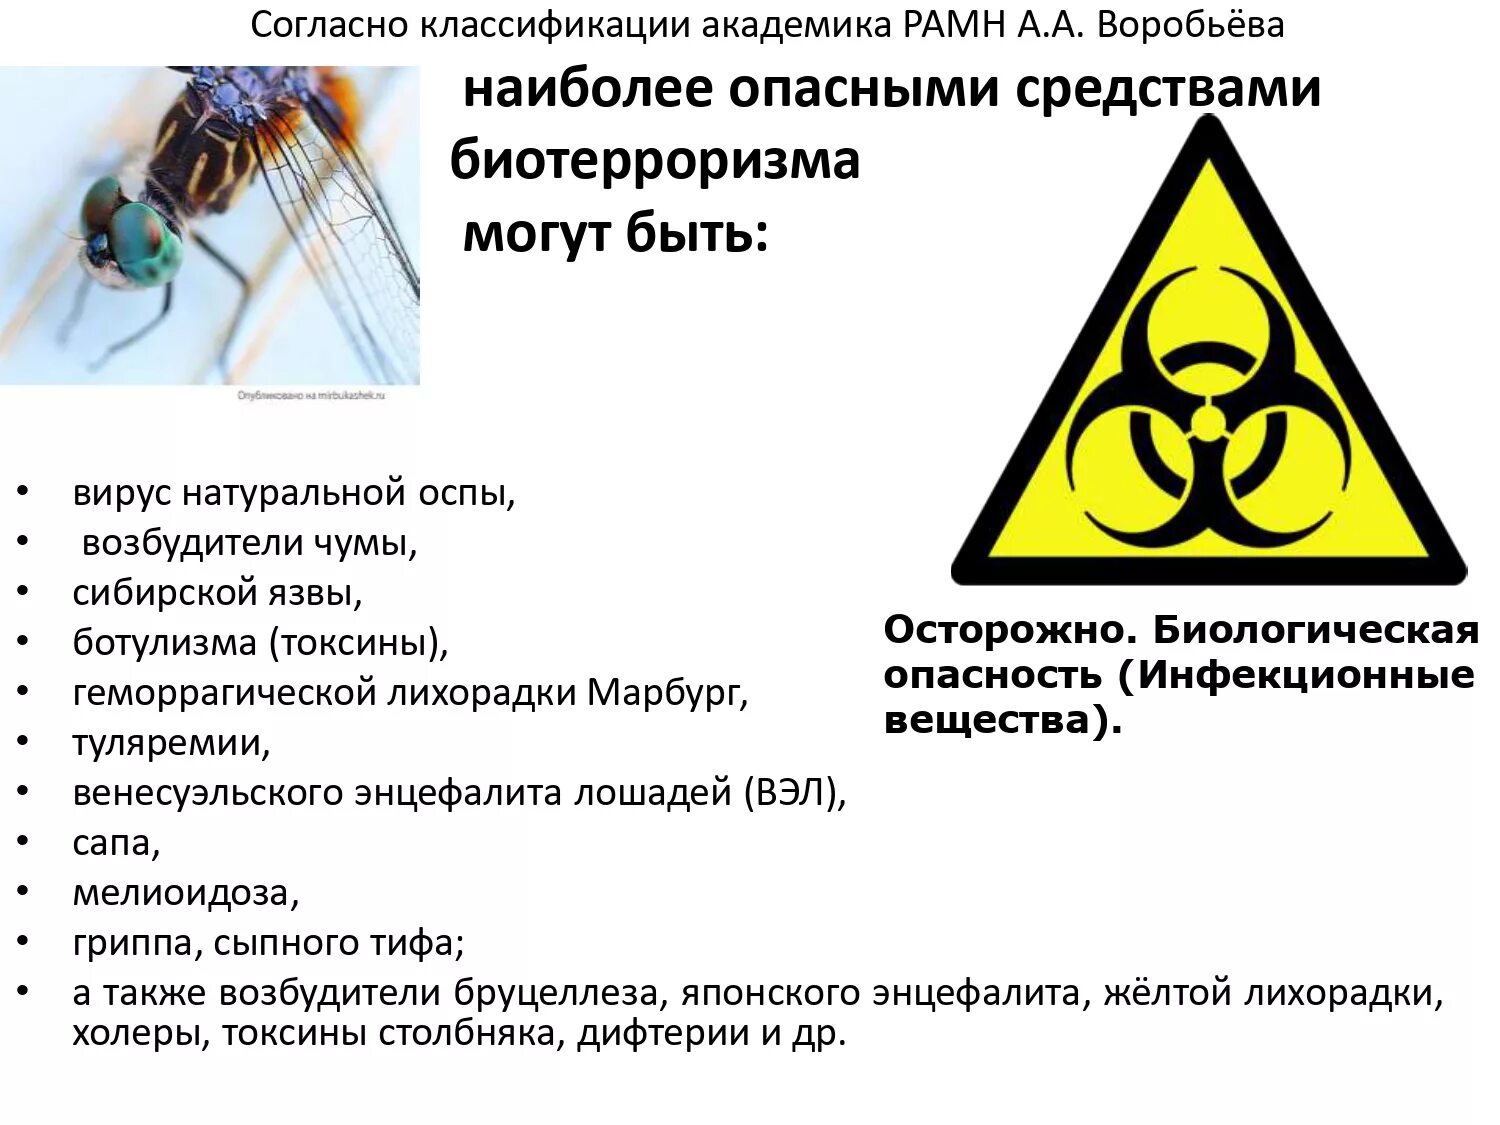 Правила биологической безопасности. Биологическая опасность. Биологически опасные объекты. Биологическое оружие и биотерроризм. Биологическая безопасность.